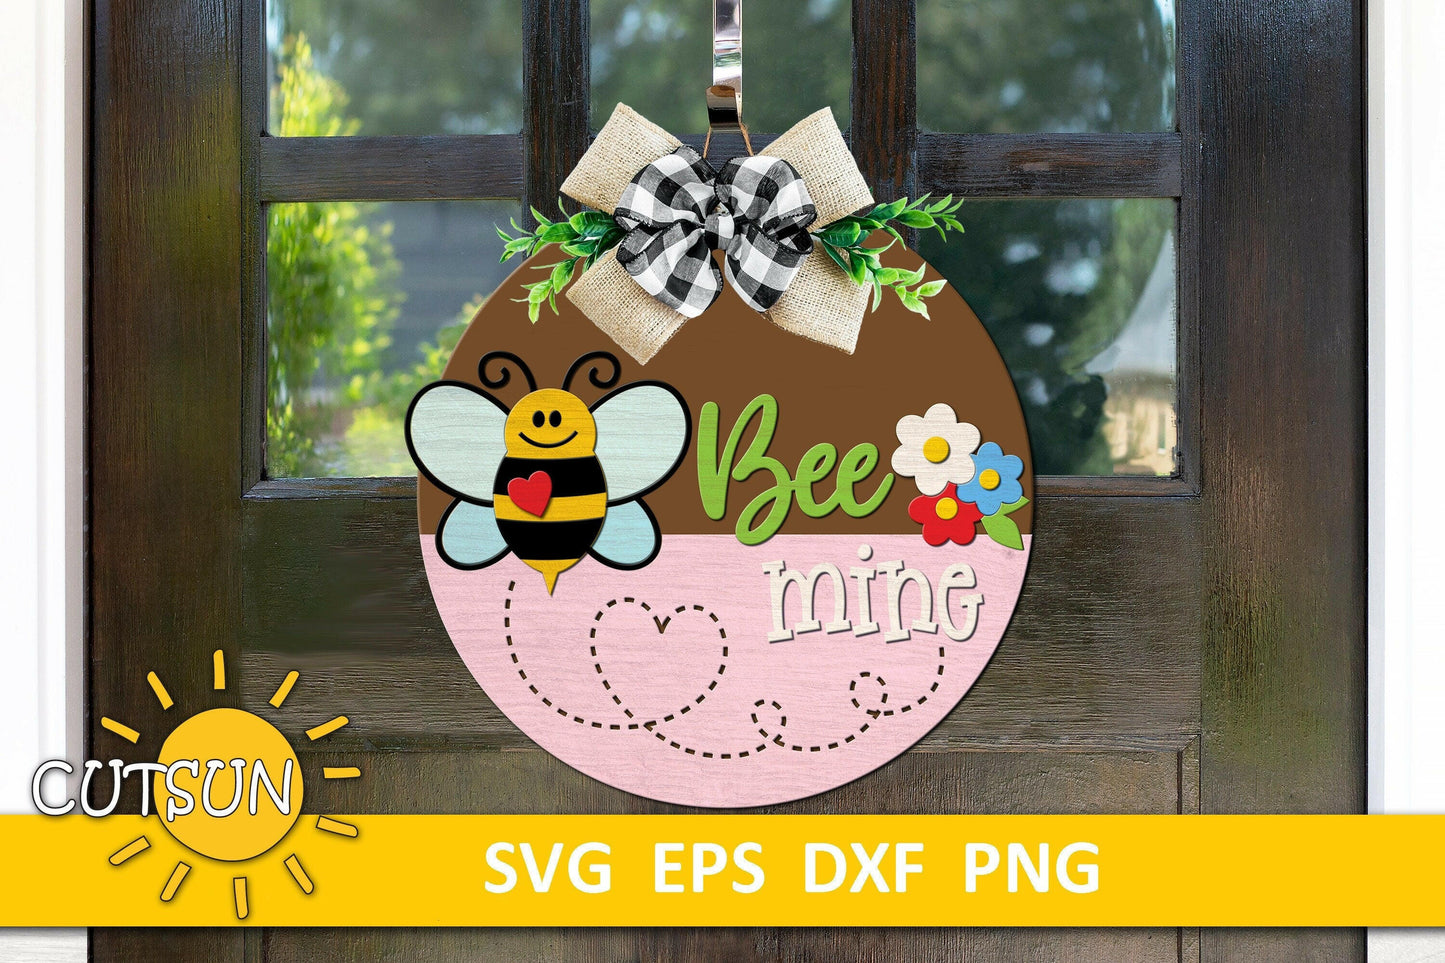 Bee Mine Door Hanger SVG Laser Cut Files Bee Svg Valentine Welcome Sign Svg Front Door Sign Glowforge File Bee svg